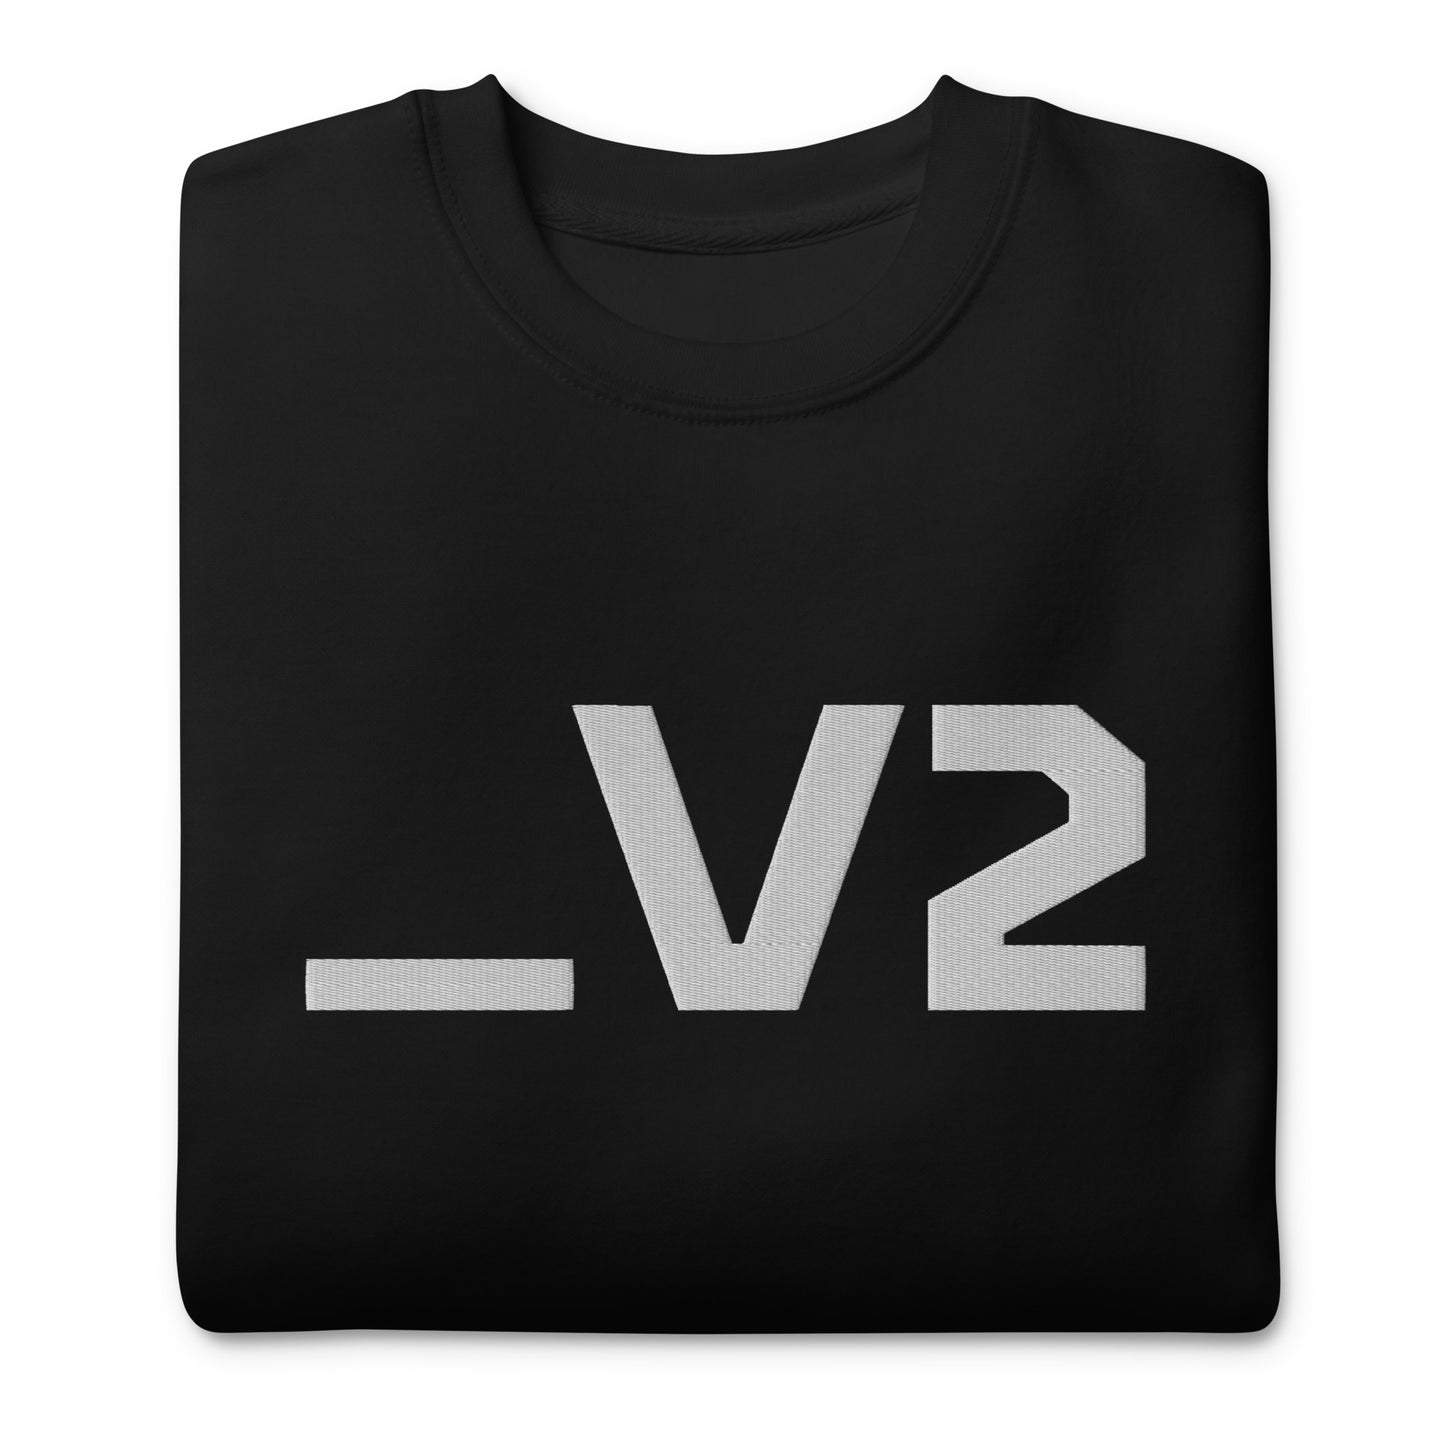 _V2 Large Embroidery Unisex Premium Sweatshirt